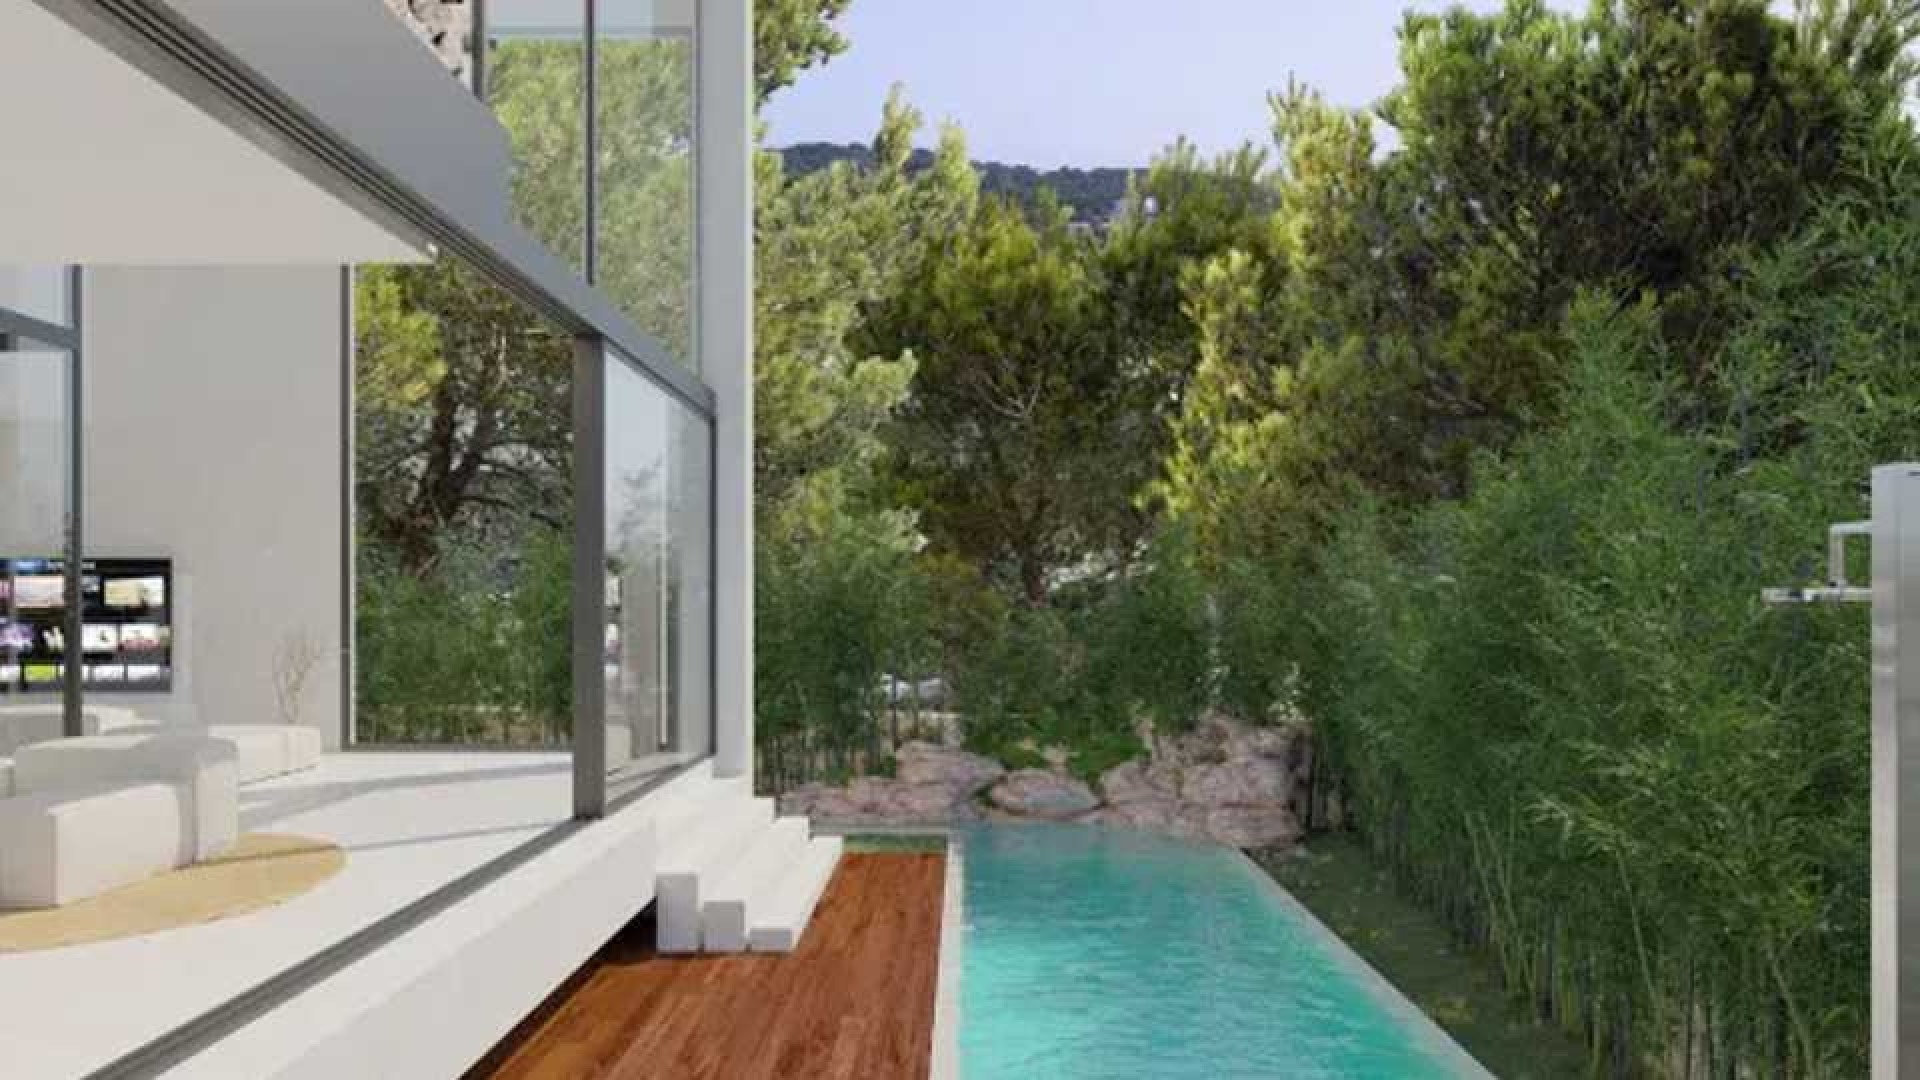 Wesley Sneijder verkoopt zijn villa met megakorting. Zie foto's